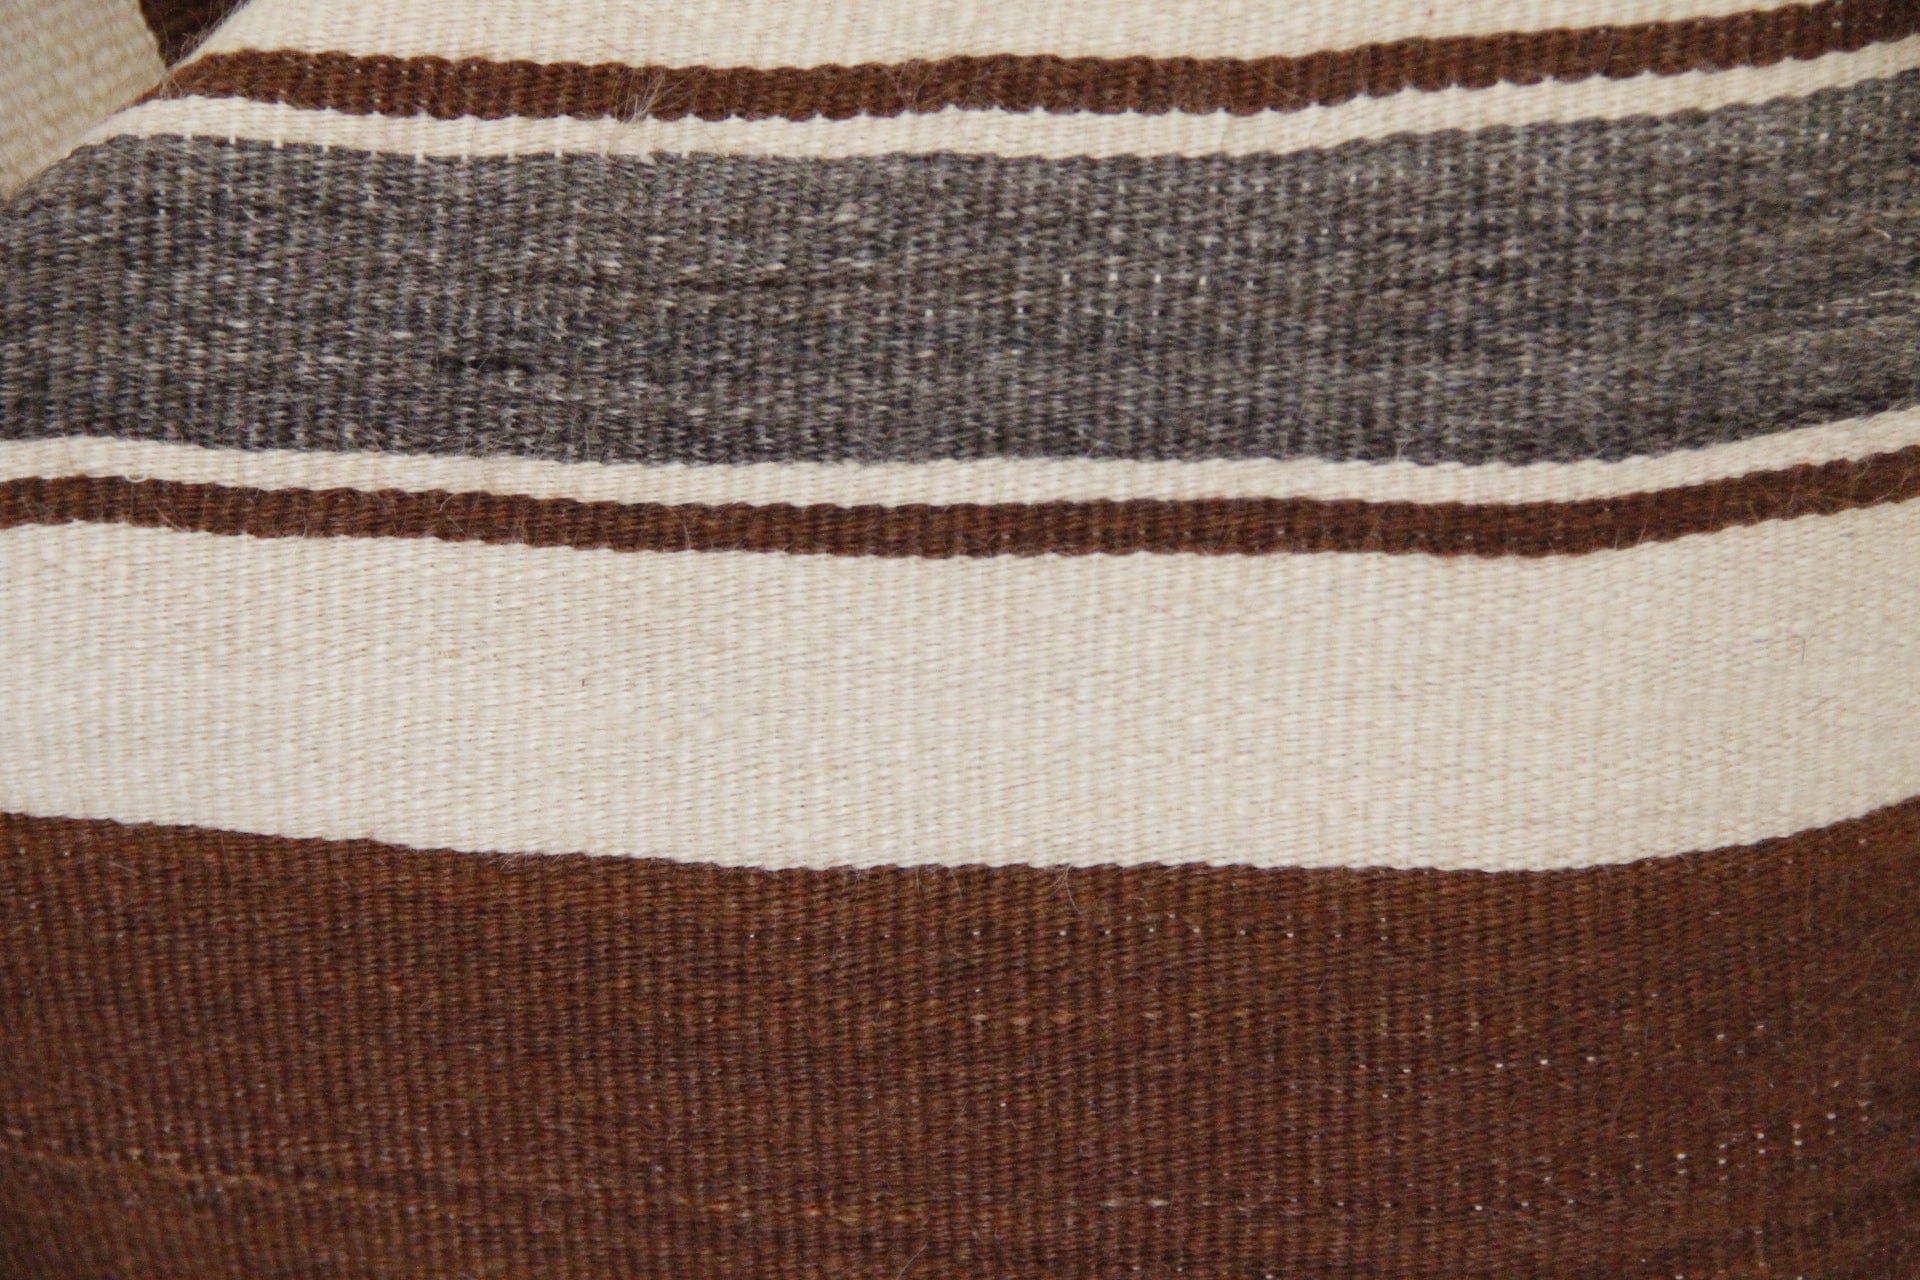 Wool Throw Pillow Cover | Cognac Stripe Pillow